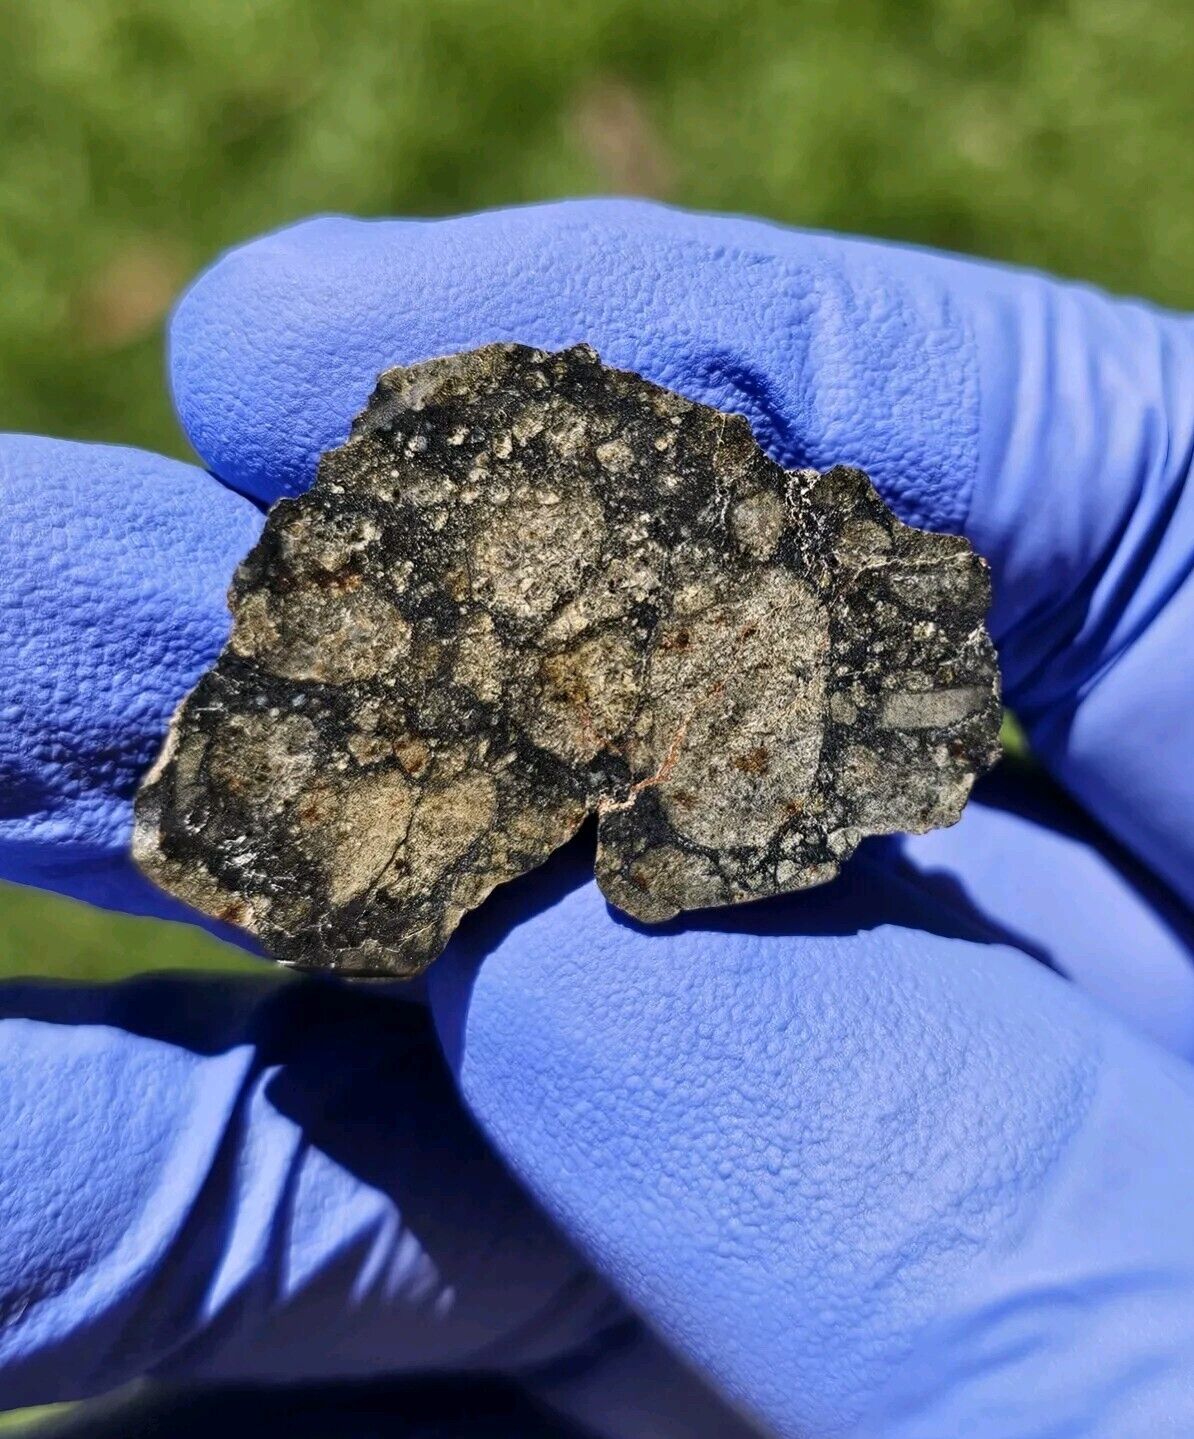 Meteorite**NWA Unc., prob. Eucrite**4.933 gram, W/Brecciated Matrix 